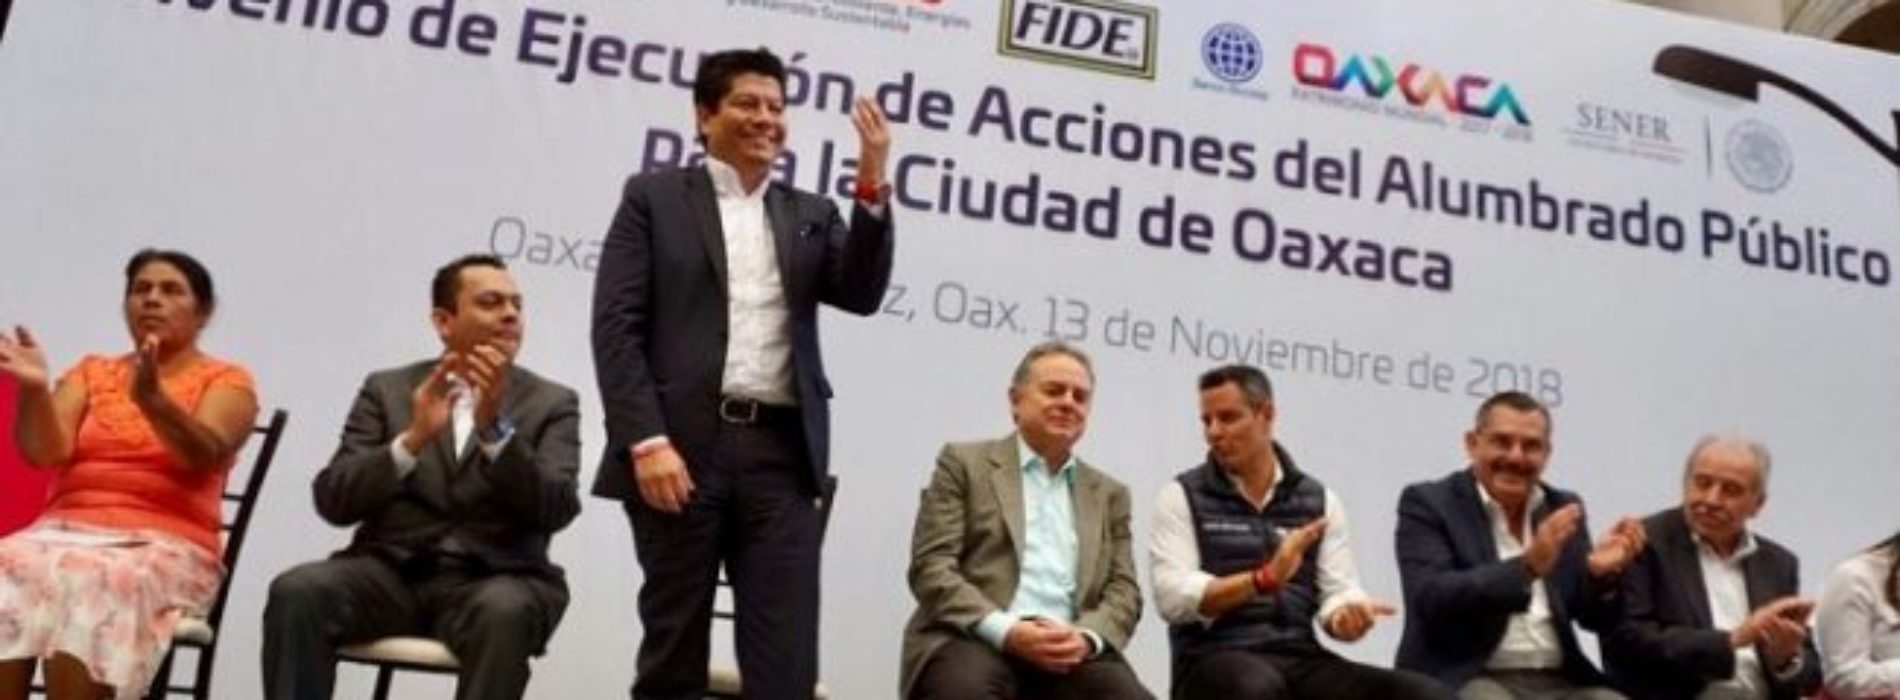 Oaxaca tendrá nuevo alumbrado público sustentable